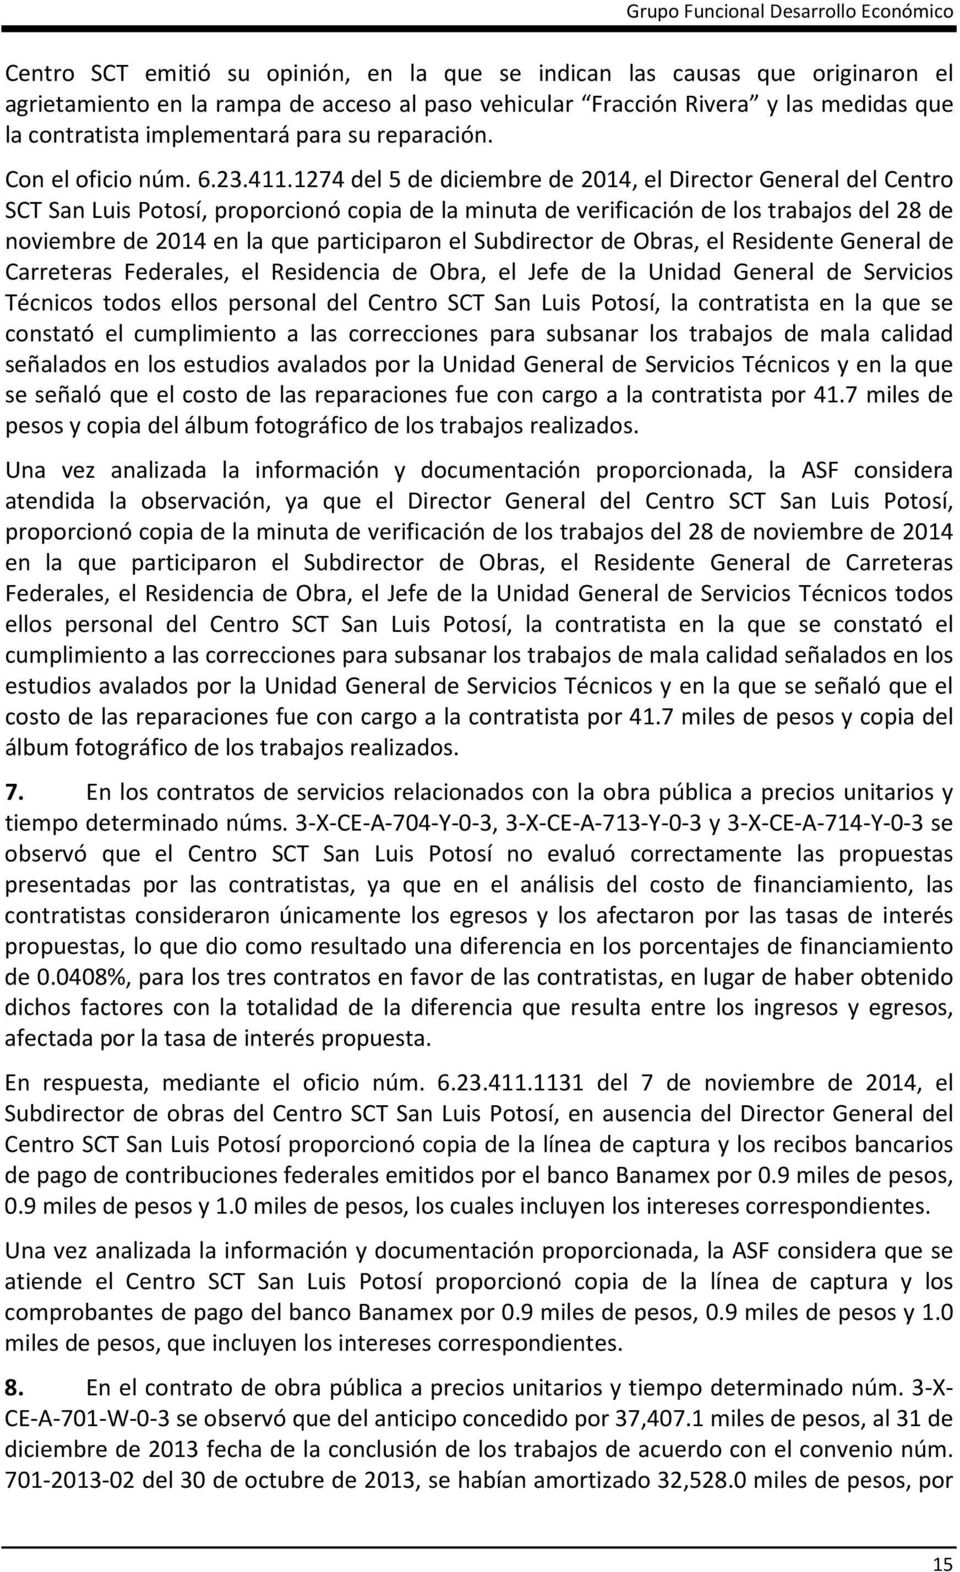 1274 del 5 de diciembre de 2014, el Director General del Centro SCT San Luis Potosí, proporcionó copia de la minuta de verificación de los trabajos del 28 de noviembre de 2014 en la que participaron